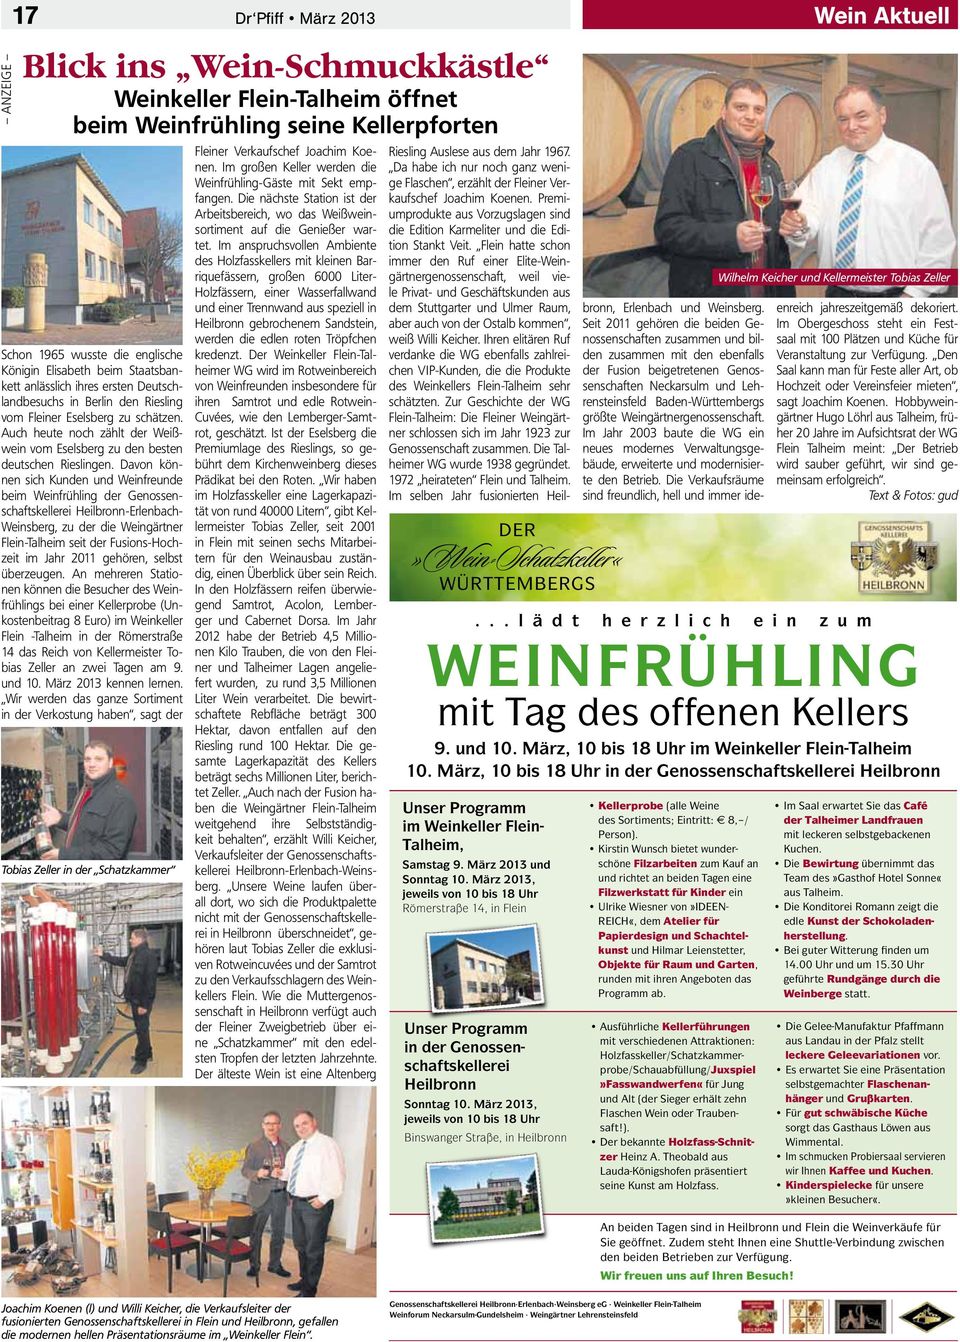 Davon können sich Kunden und Weinfreunde beim Weinfrühling der Genossenschaftskellerei Heilbronn-Erlenbach- Weinsberg, zu der die Weingärtner Flein-Talheim seit der Fusions-Hochzeit im Jahr 2011